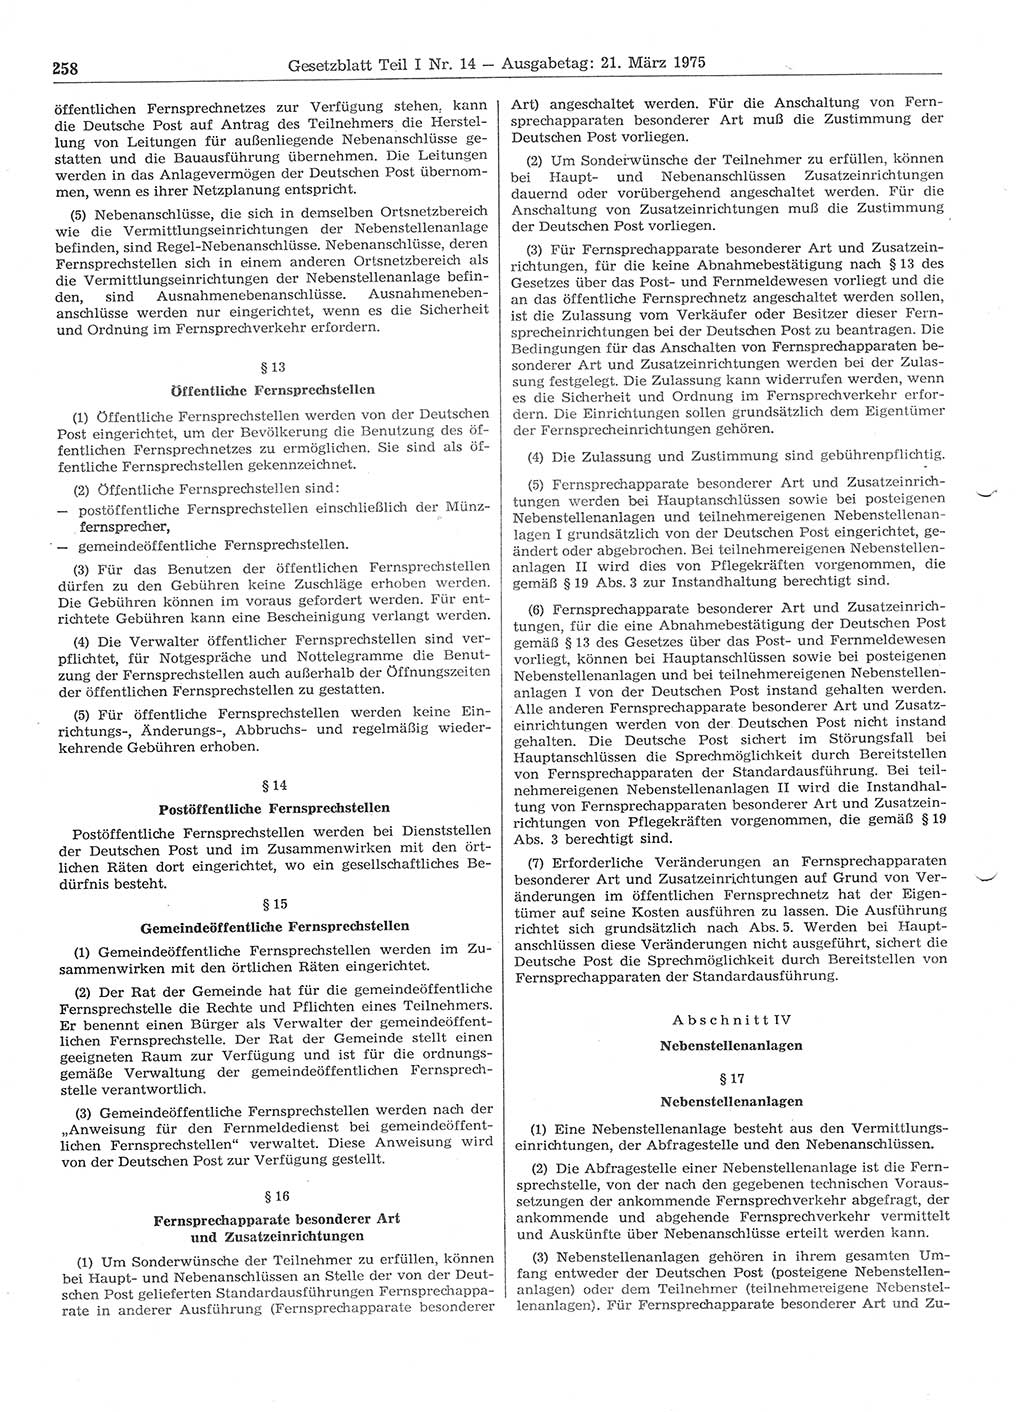 Gesetzblatt (GBl.) der Deutschen Demokratischen Republik (DDR) Teil Ⅰ 1975, Seite 258 (GBl. DDR Ⅰ 1975, S. 258)